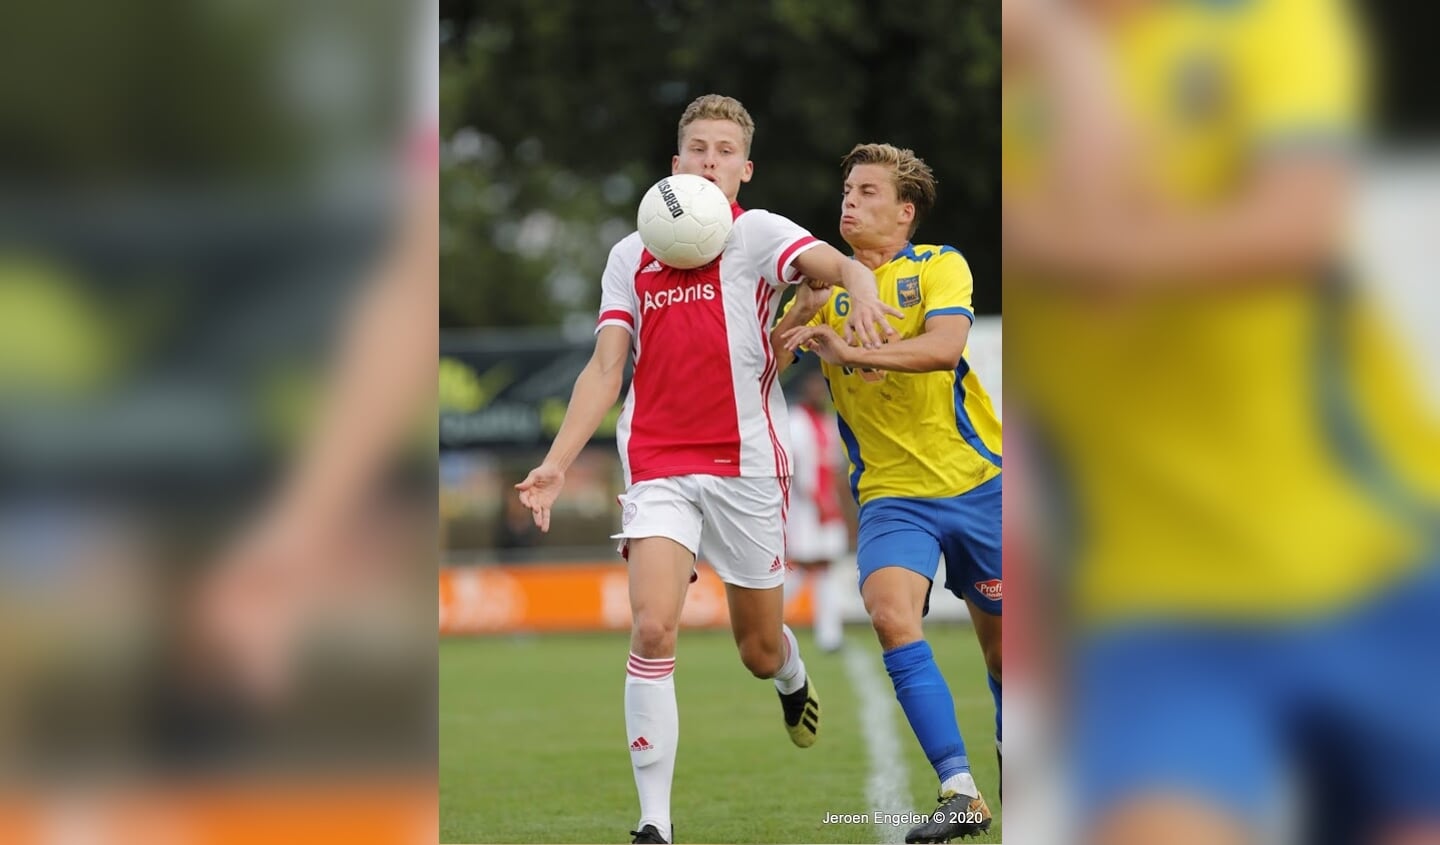 O.S.S.'20 - Ajax amateurs. (Foto: Jeroen Engelen)